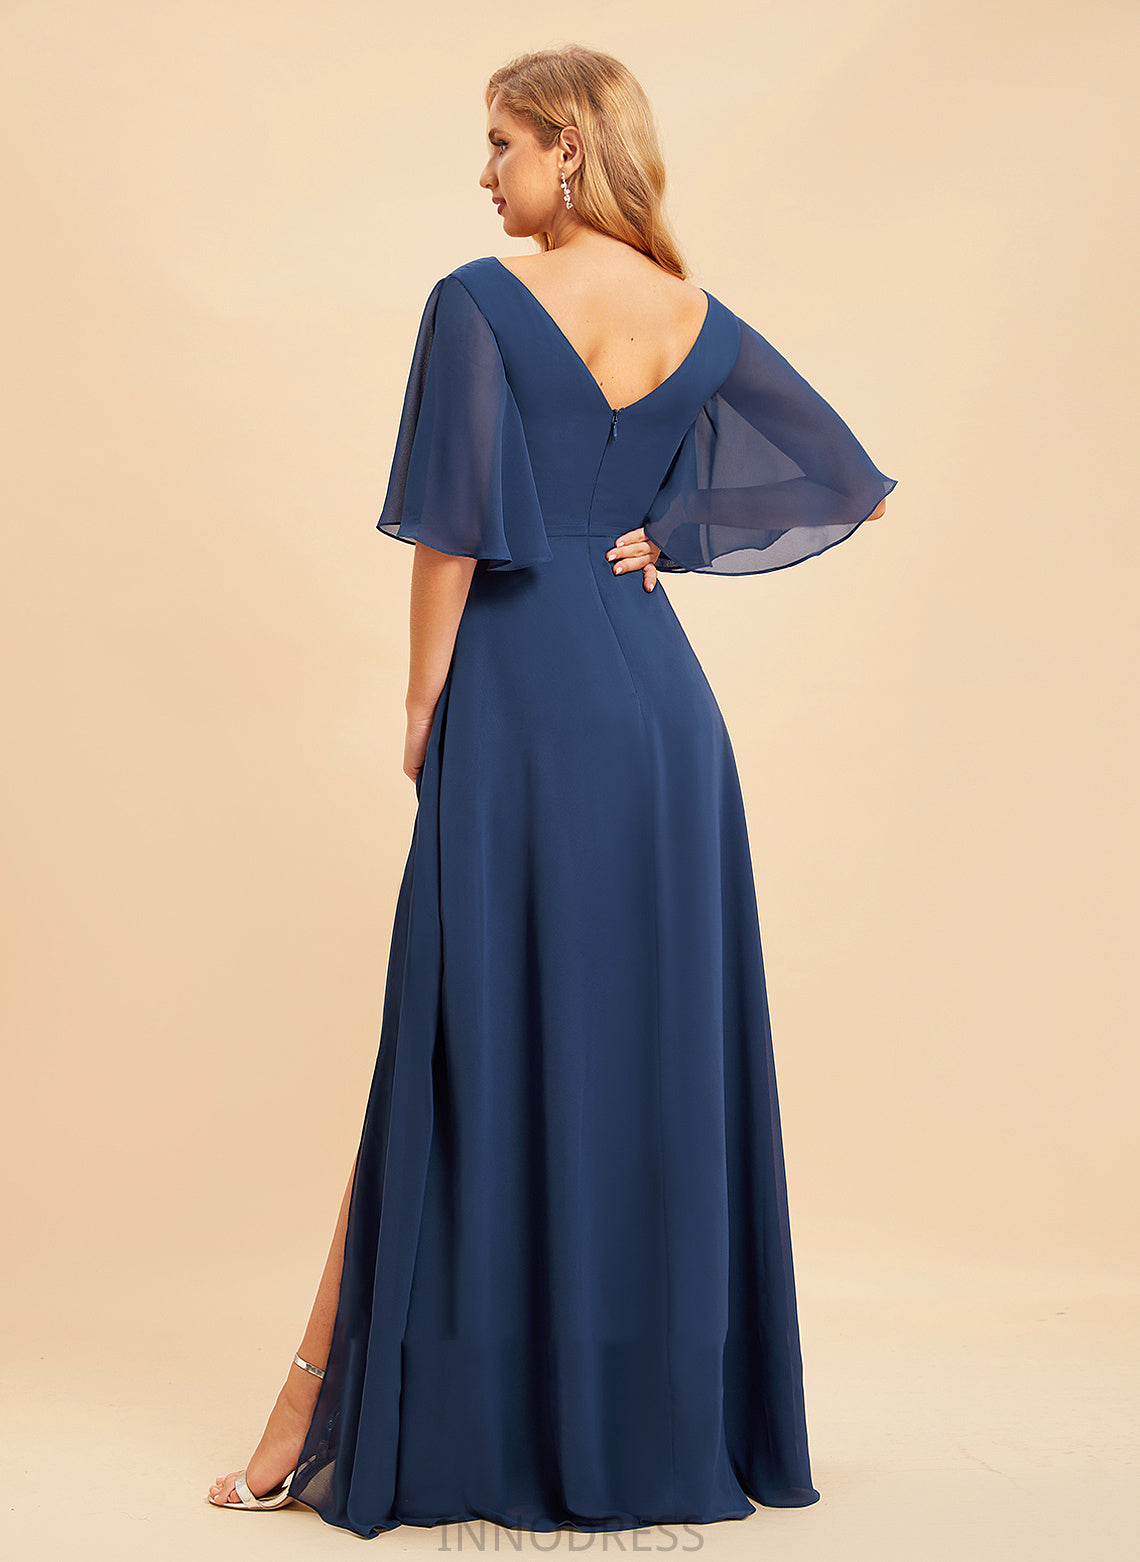 Embellishment Floor-Length V-neck Fabric A-Line SplitFront Length Neckline Silhouette Eliana Natural Waist Satin Bridesmaid Dresses